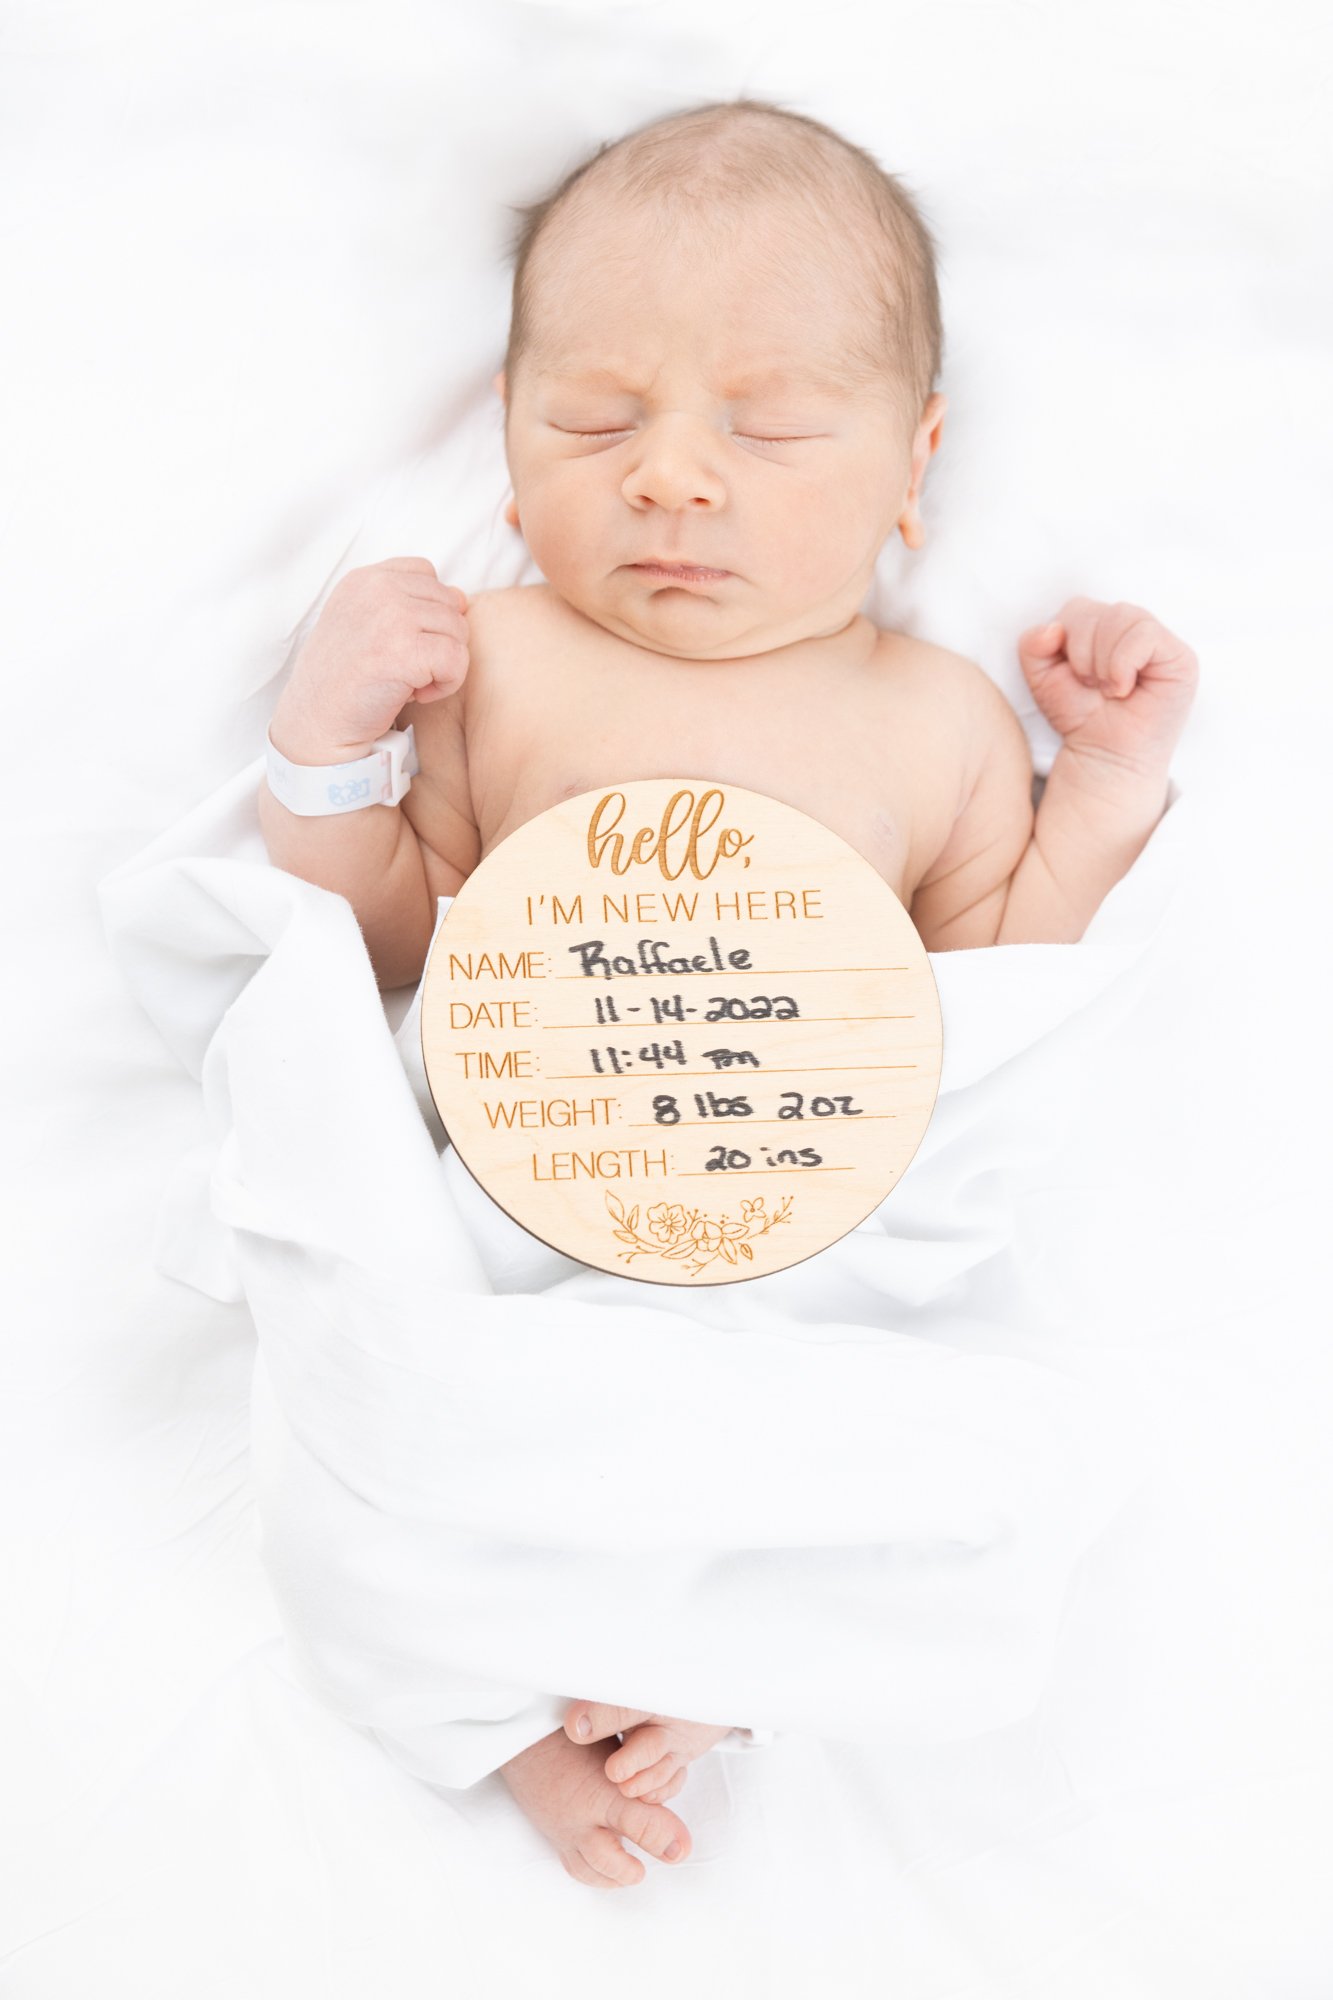 Raffaele - Newborn - Websize-1030.jpg